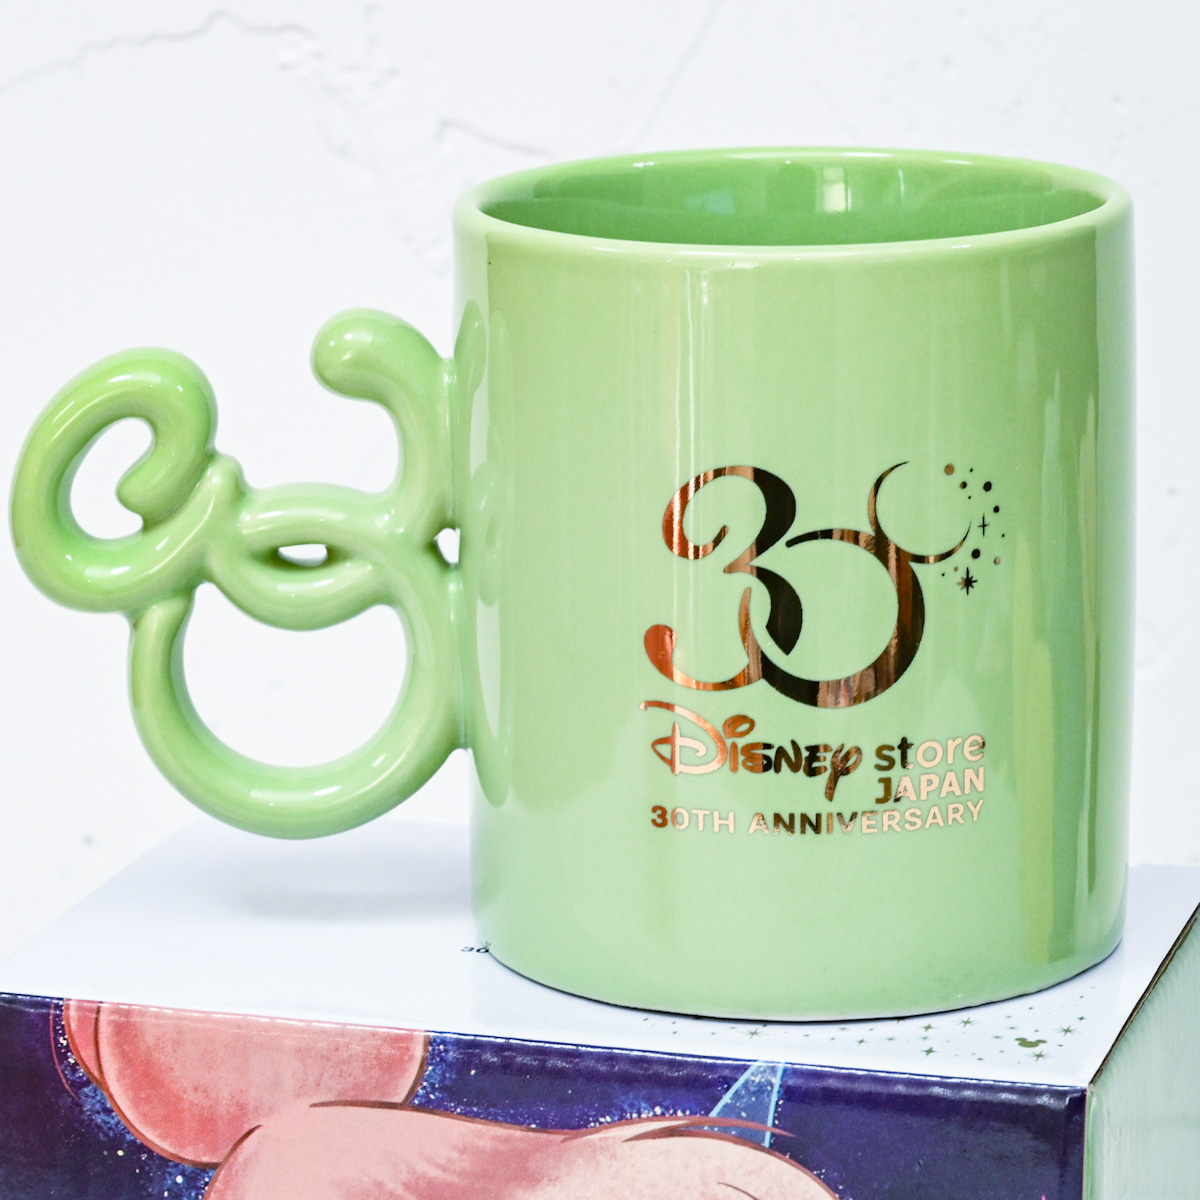 ティンカー・ベル マグカップ Disney Store Japan 30th Anniversary　バックデザイン